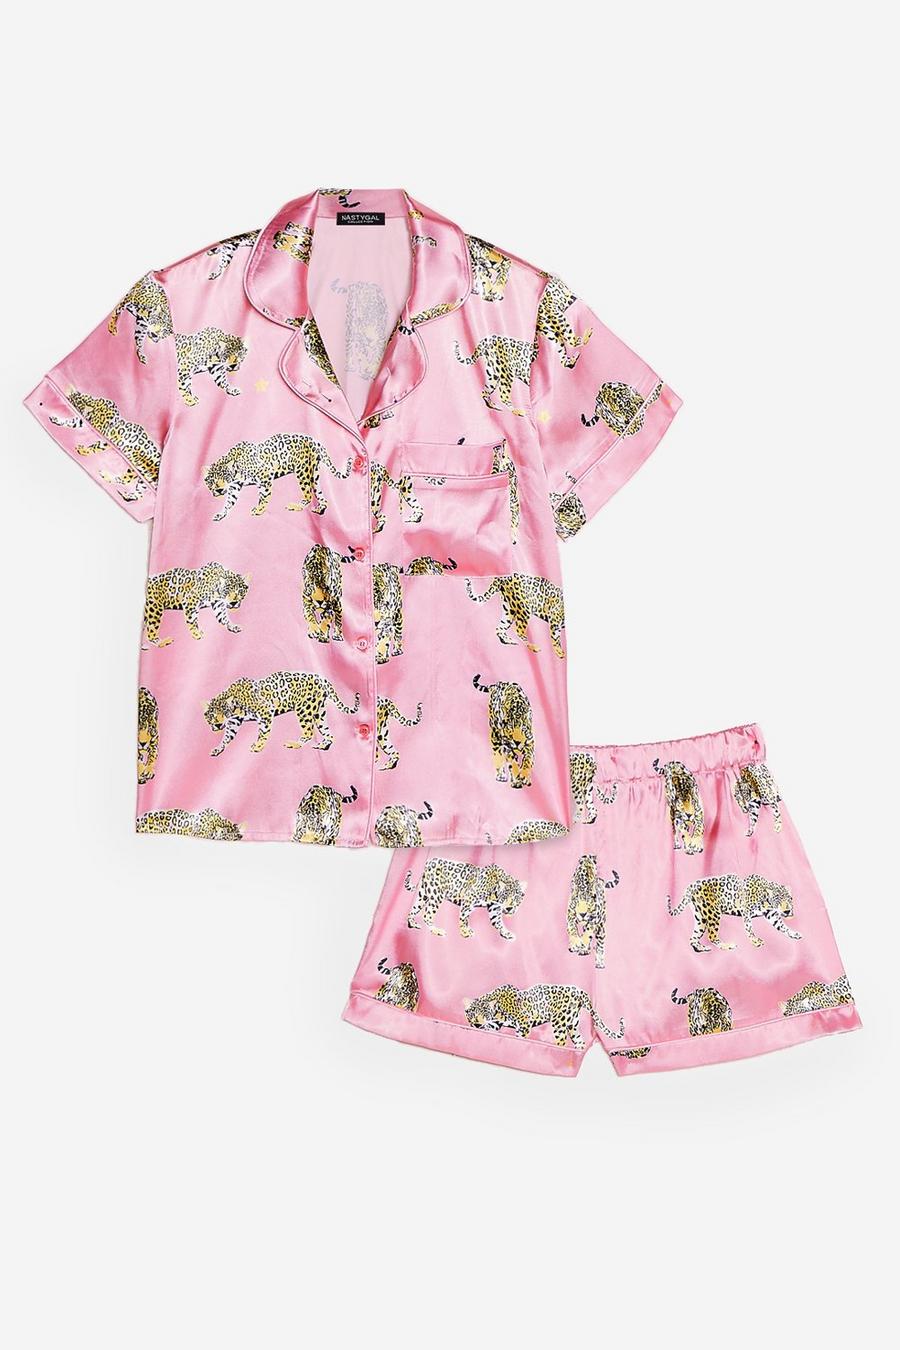 Cheetahs Always Prosper Satin Shorts Pajama Set